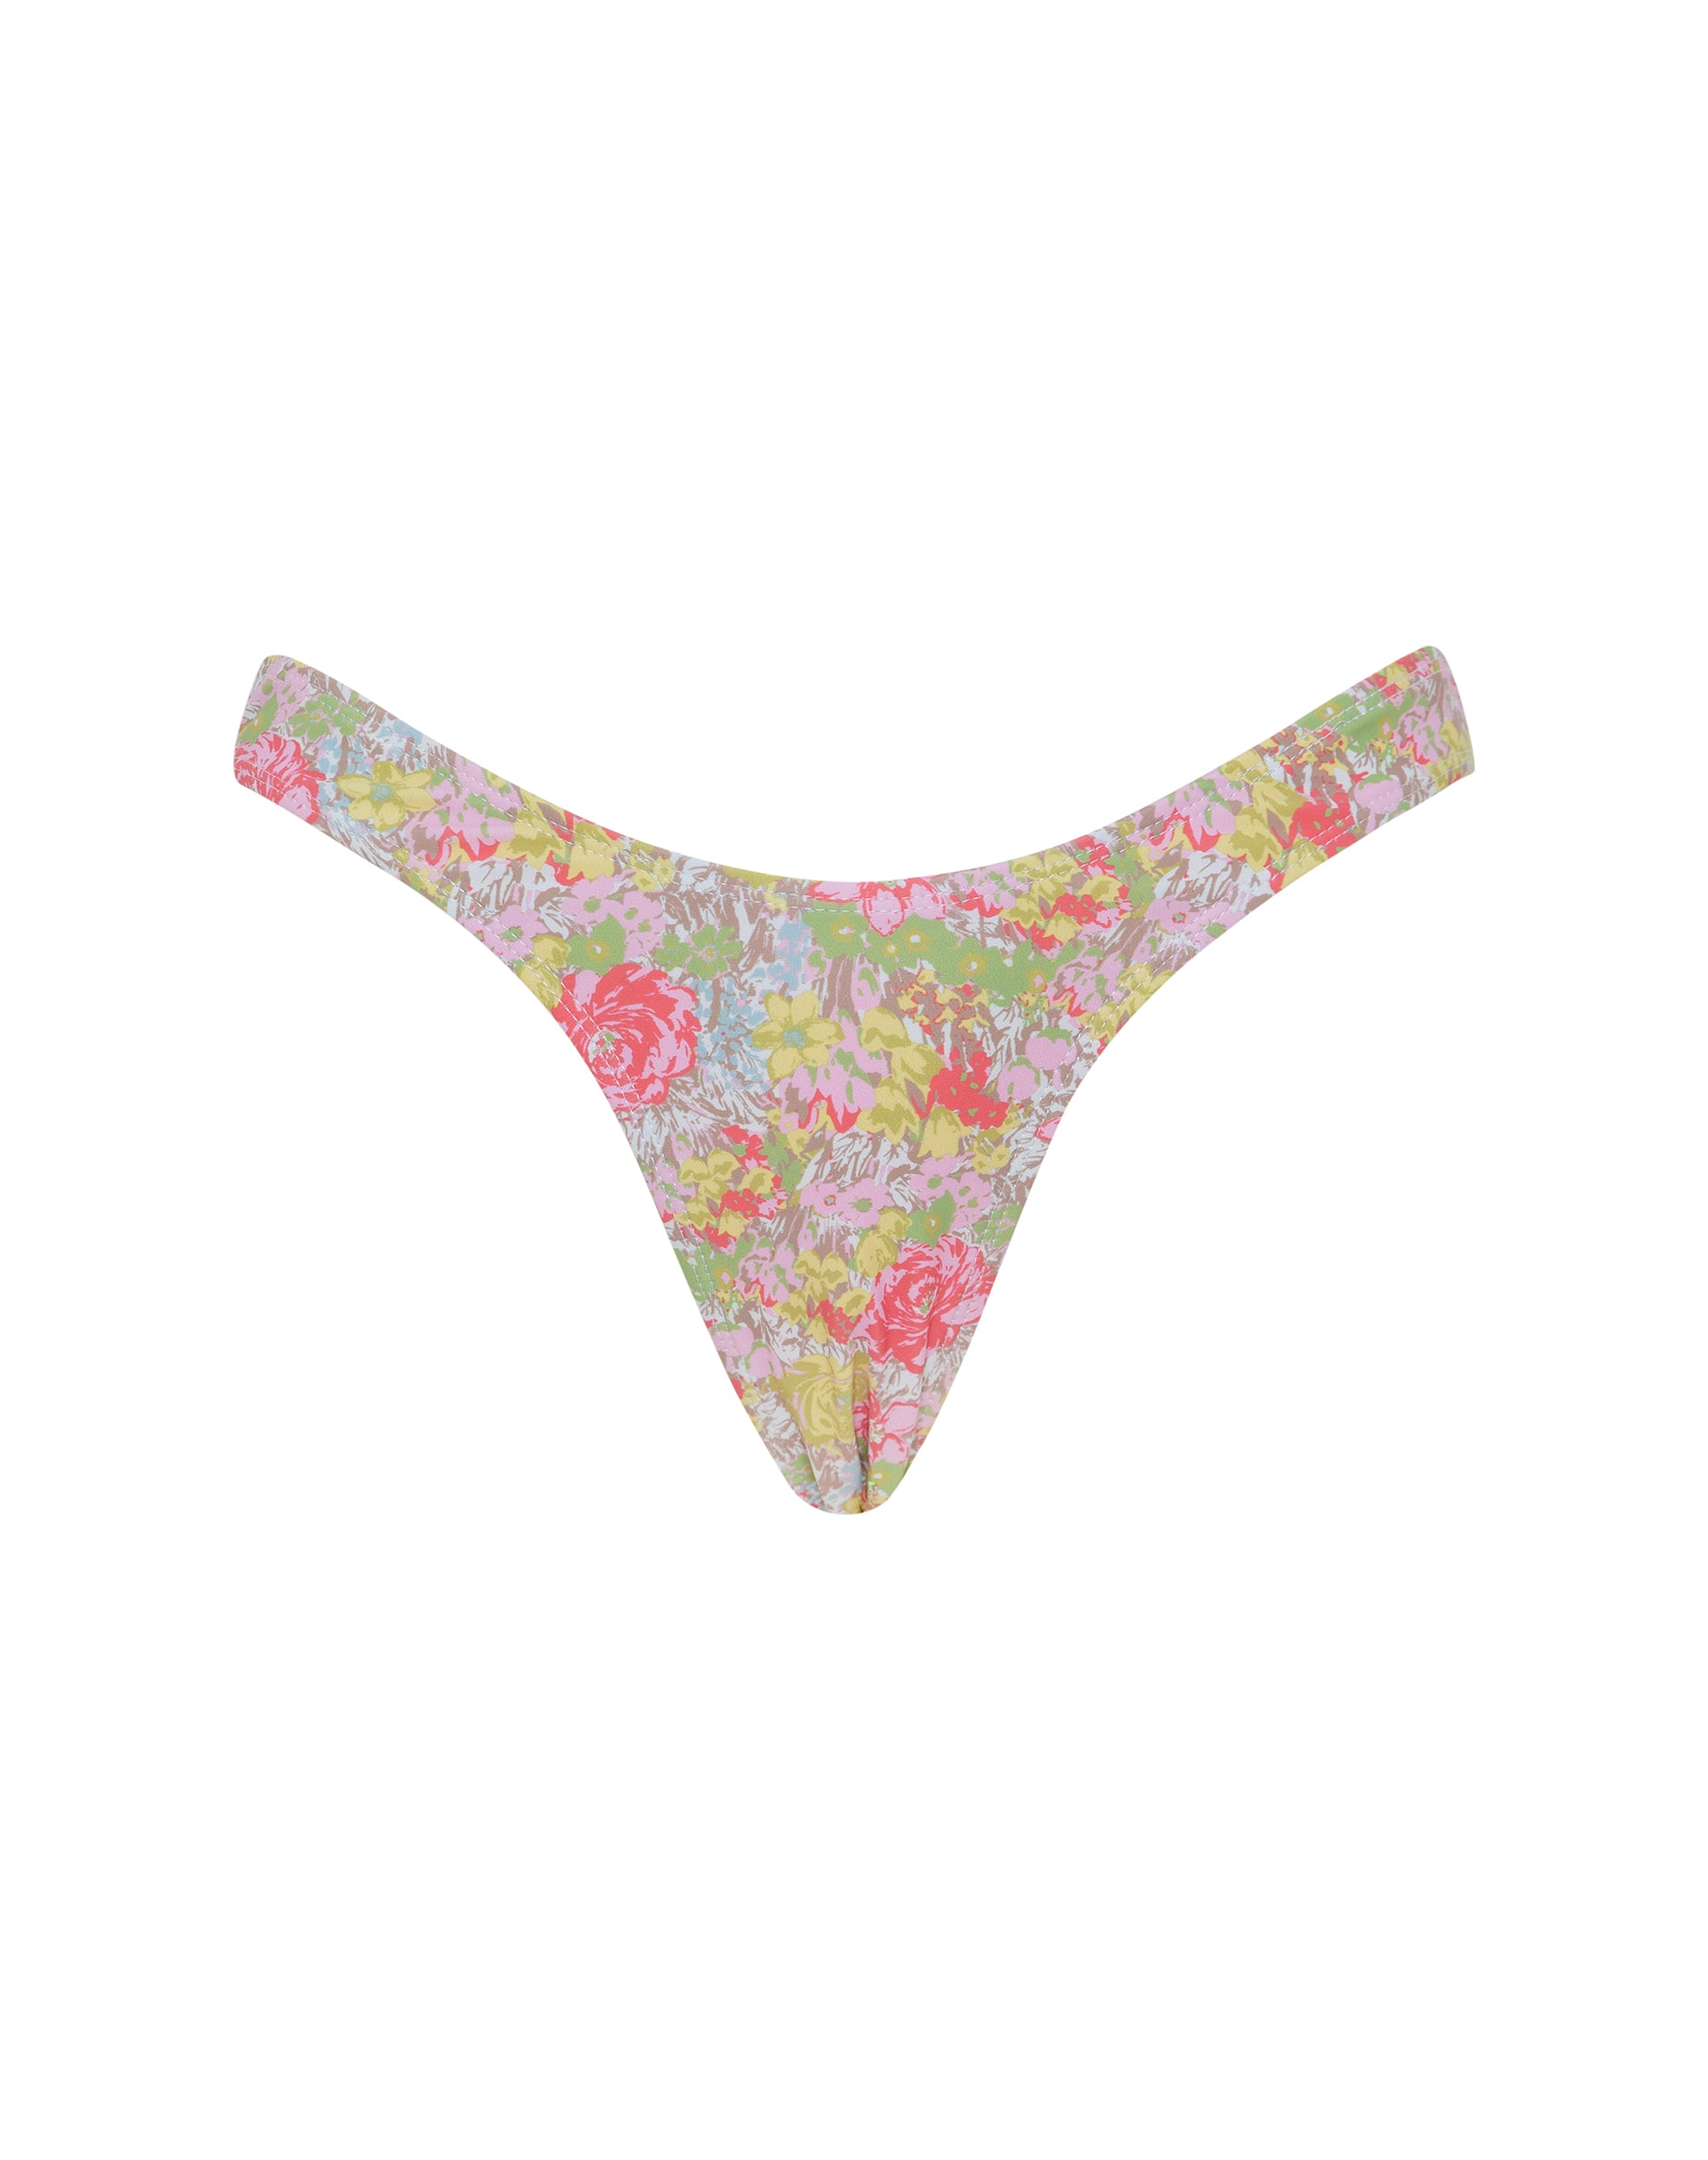 Image of Farida Bikini Bottom in Pink Abstract Floral Swim